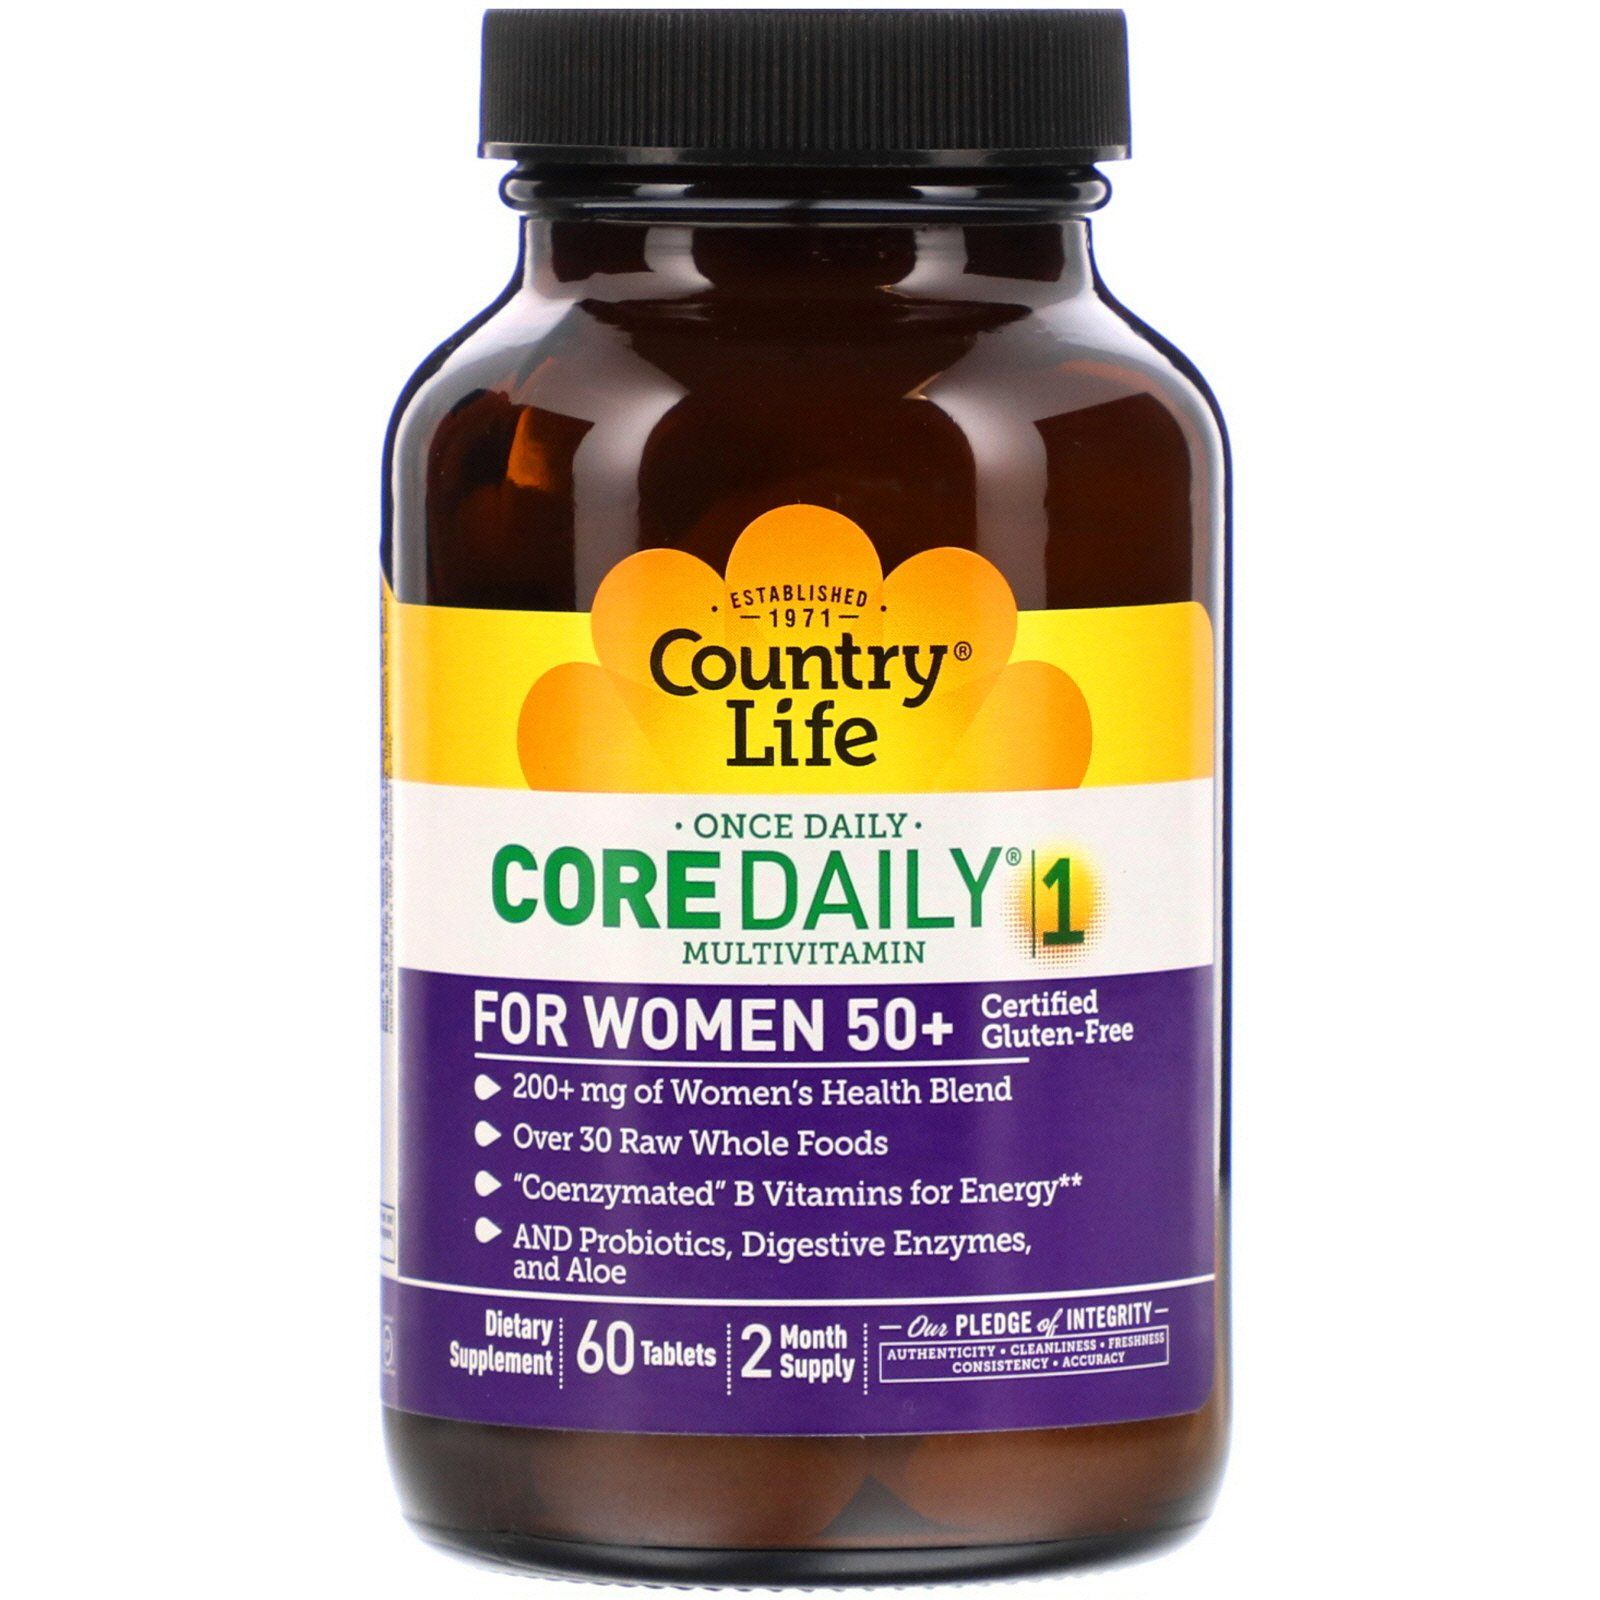 Лучшие витамины для женщины при климаксе. Country Life Core Daily-1 Multivitamin for women 50+. Country Life, мультивитамины Core Daily-1 (women). One Daily Multivitamin women 50+. Country Life, Core Daily-, мультивитамины для мужчин.